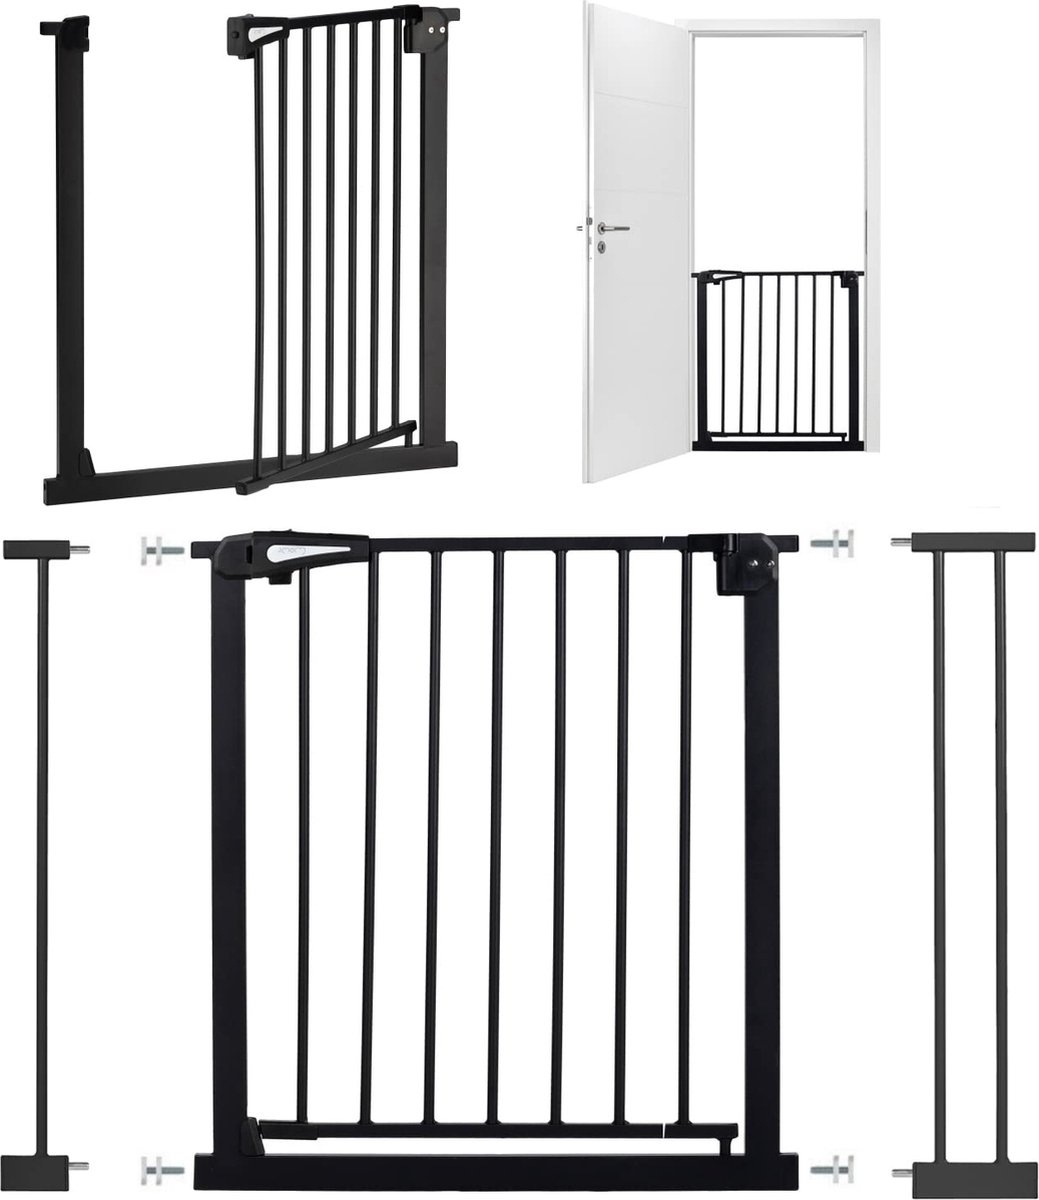 Barriere de Securite porte et escalier 96-103cm sans perçage, adaptée pour  les enfants ,animaux auto